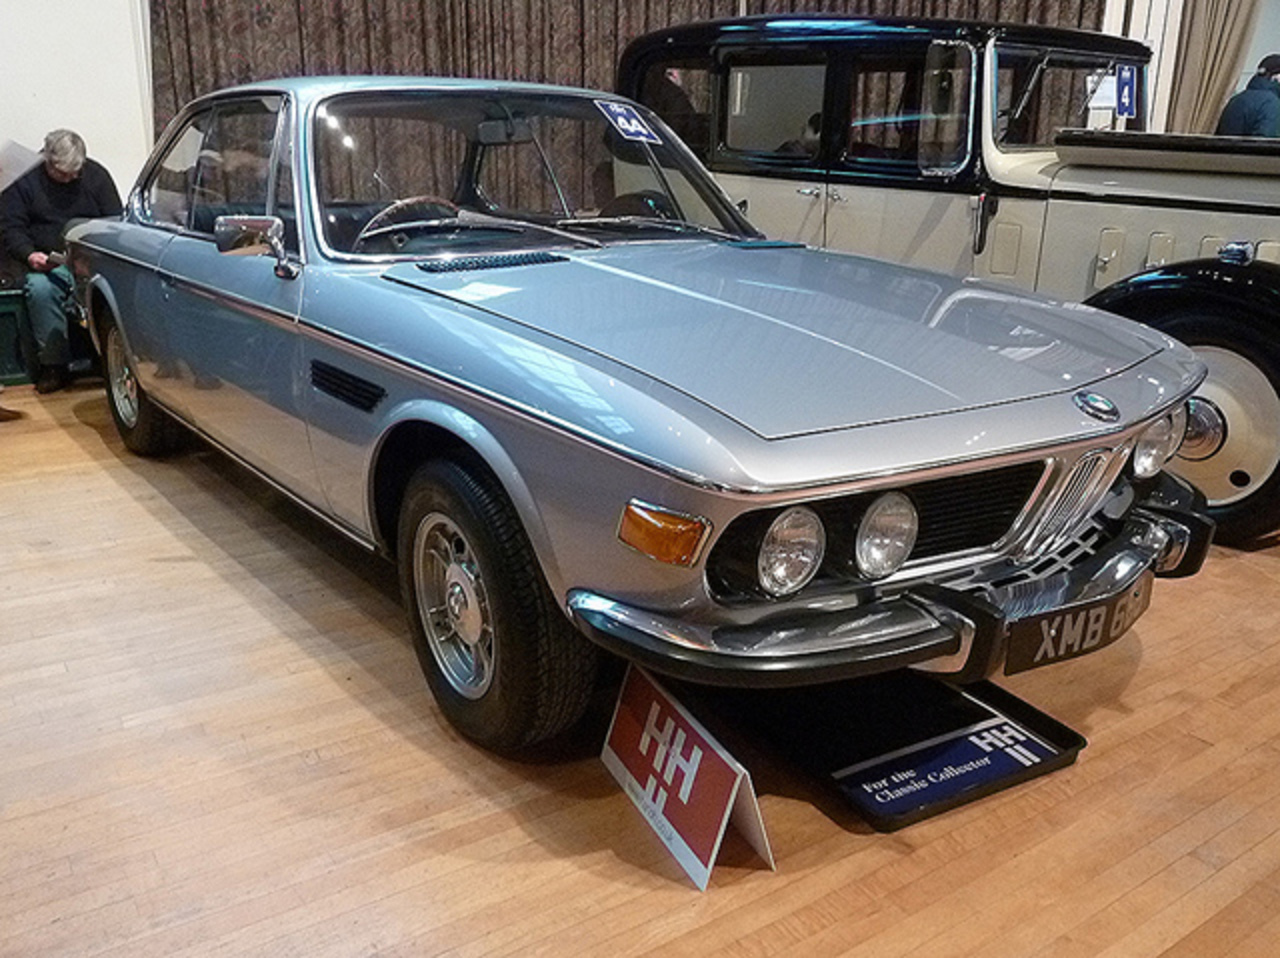 XMB 668 - 1970 BMW 2800 CS | Flickr - Photo Sharing!